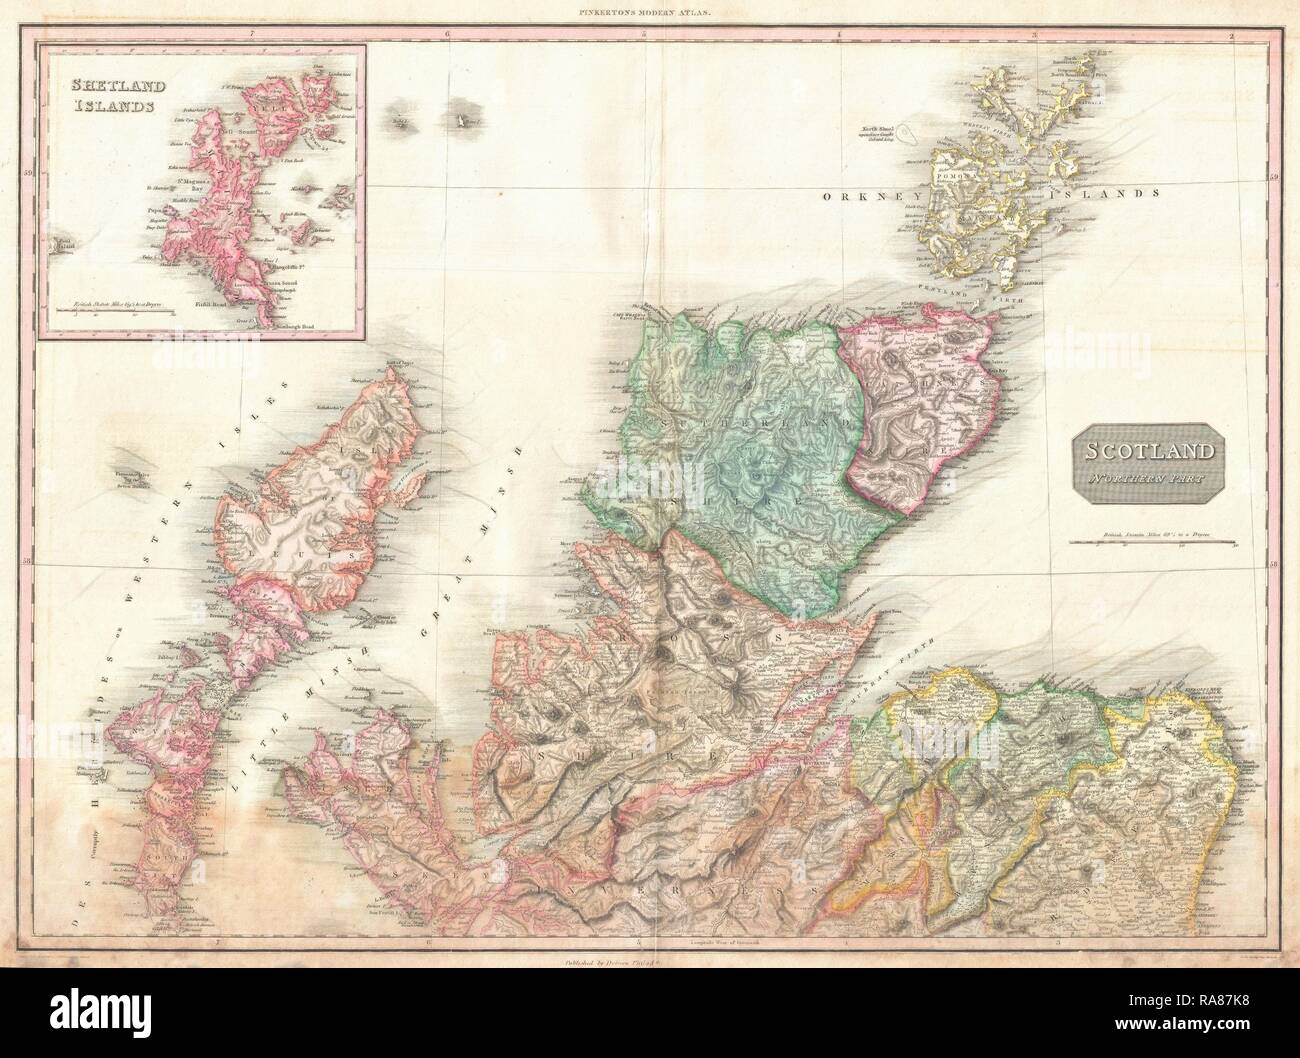 1818 Pinkerton Map Of Northern Scotland John Pinkerton 1758 1826 Scottish Antiquarian Cartographer Uk Reimagined RA87K8 